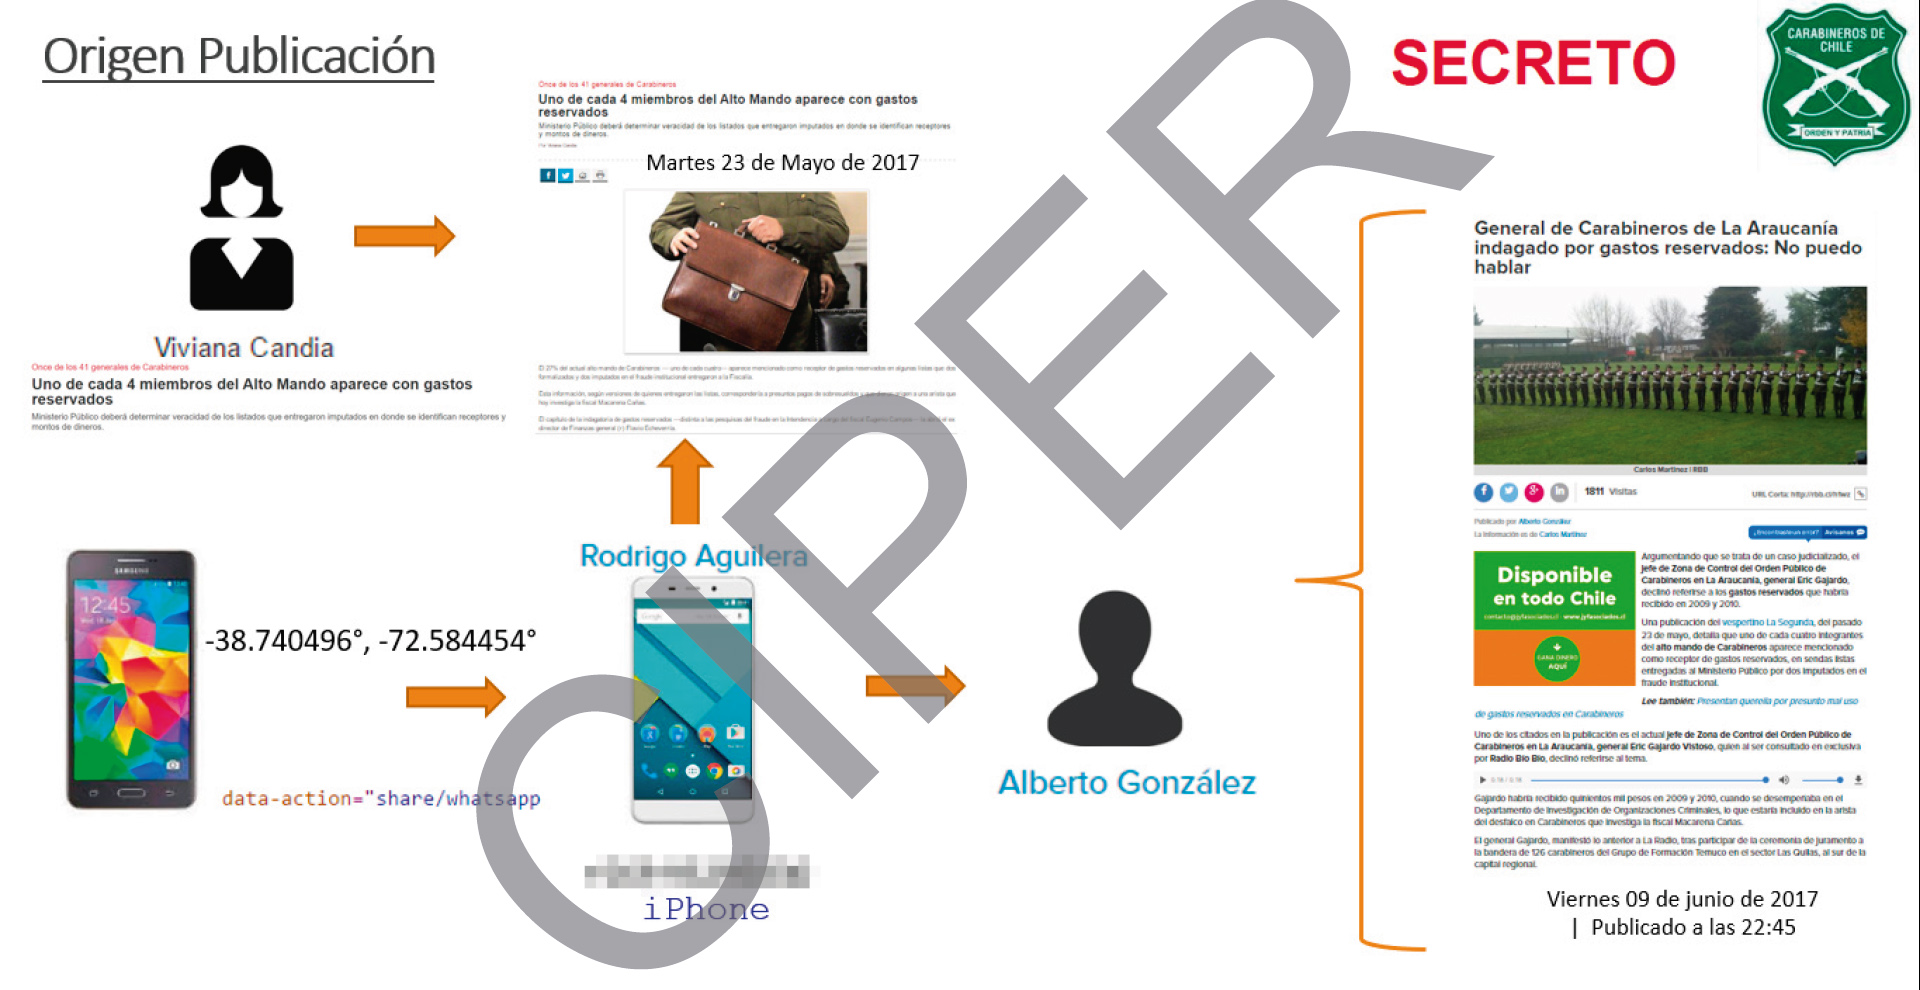 Infografía elaborada por Carabineros donde se sitúa al periodista Rodrigo Aguilera al centro de informaciones aparecidas en La Segunda y Radio Biobio